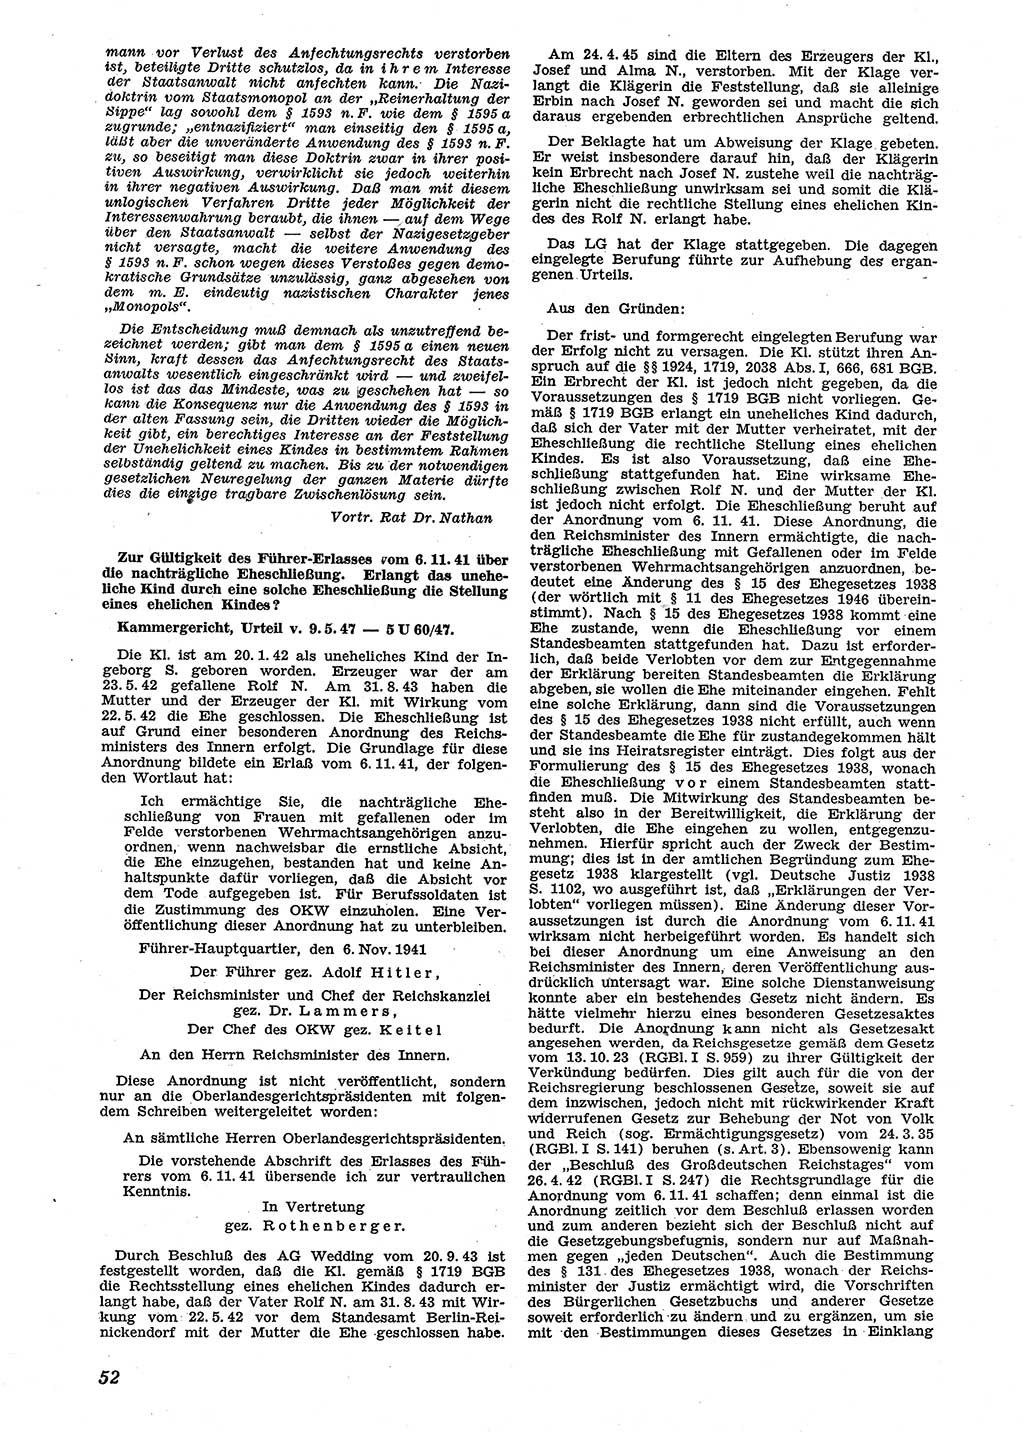 Neue Justiz (NJ), Zeitschrift für Recht und Rechtswissenschaft [Sowjetische Besatzungszone (SBZ) Deutschland], 2. Jahrgang 1948, Seite 52 (NJ SBZ Dtl. 1948, S. 52)